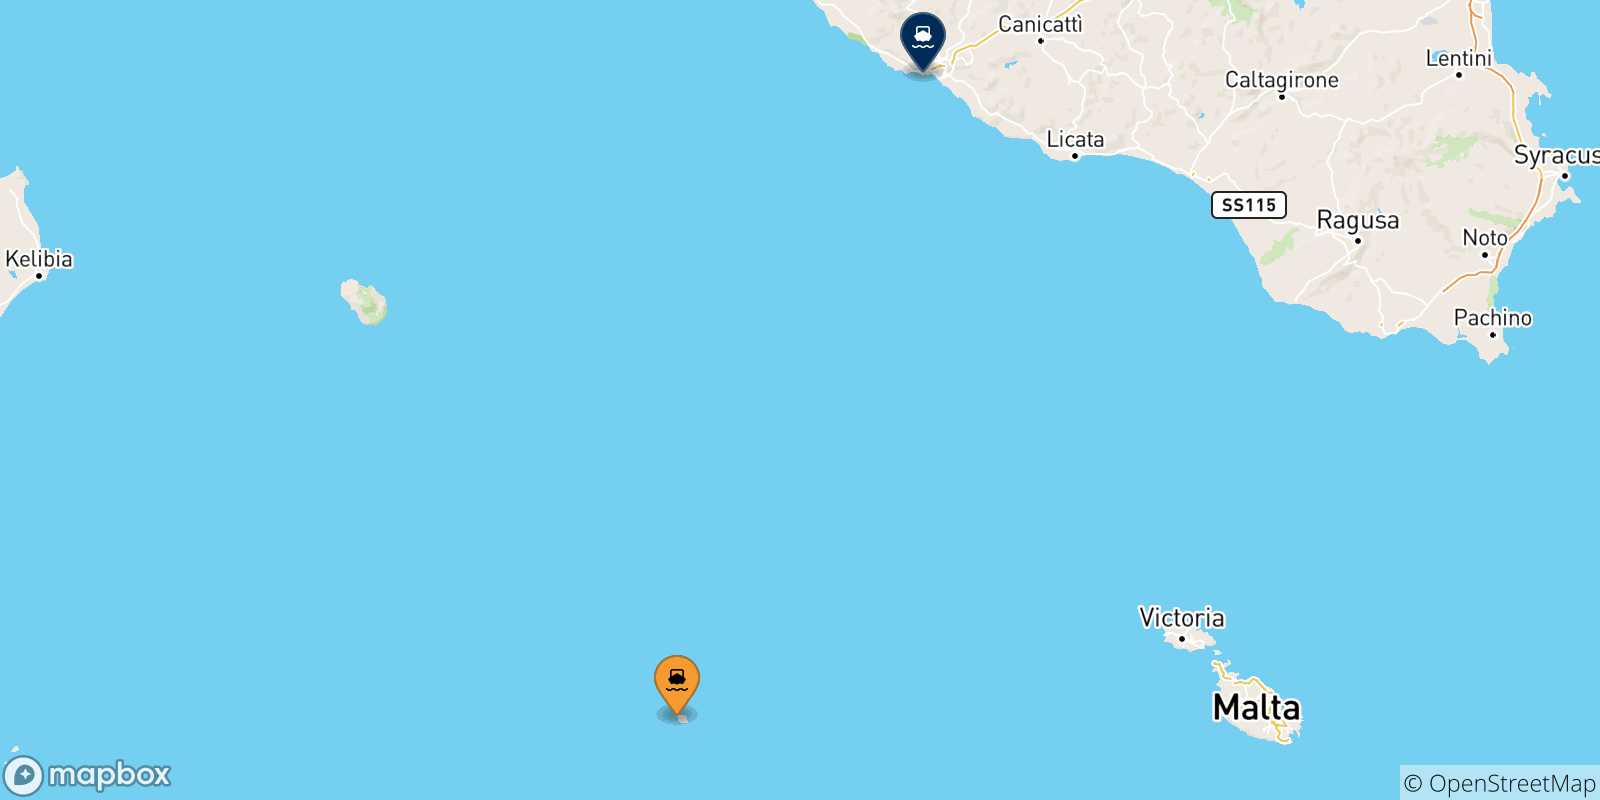 Mappa delle possibili rotte tra Linosa e la Sicilia